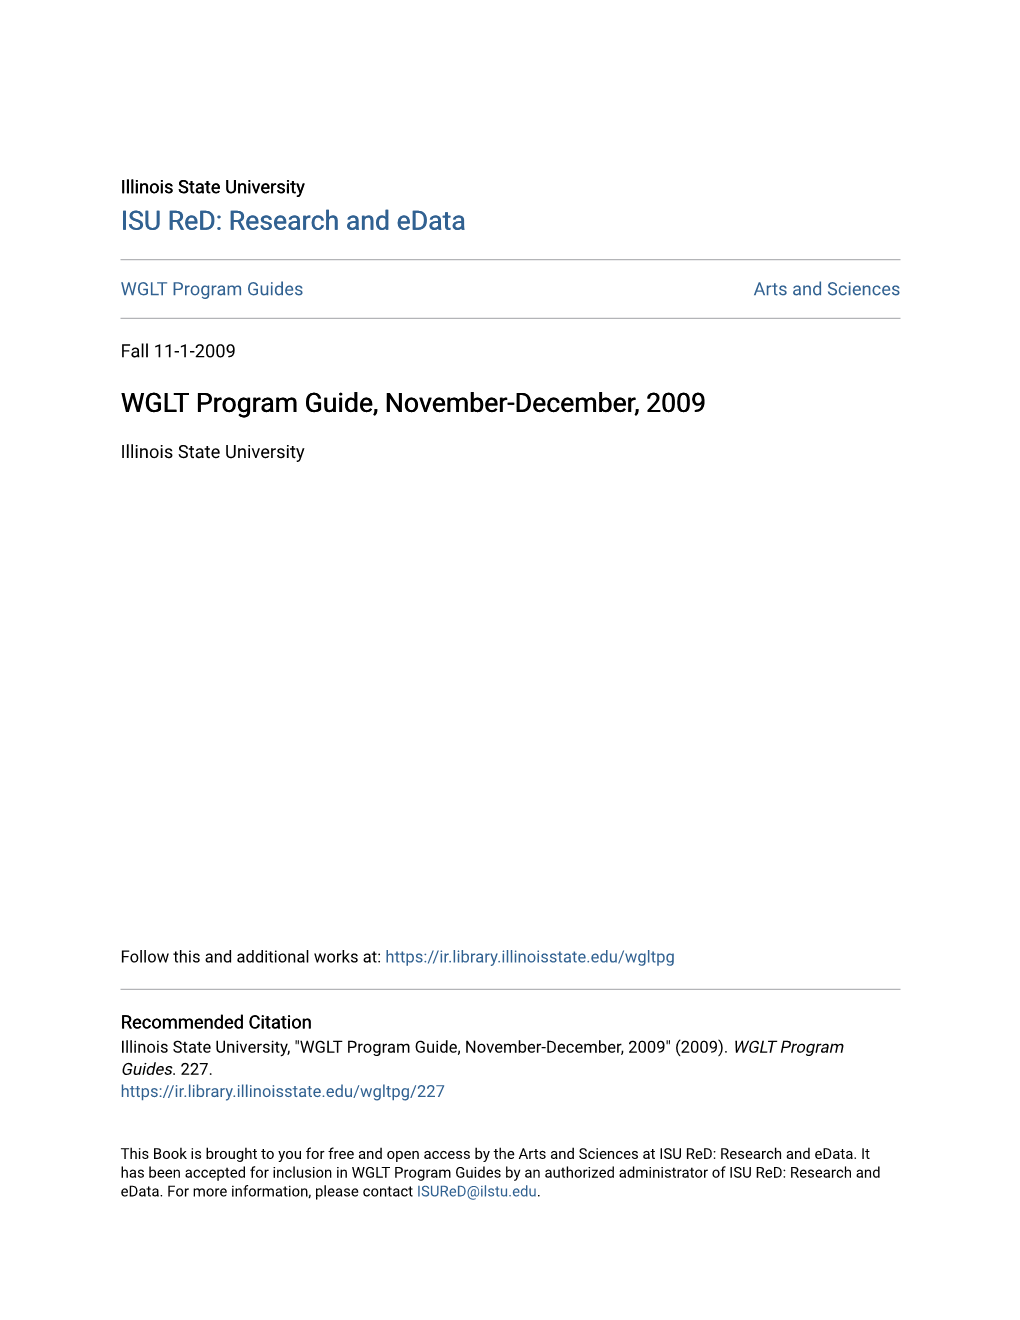 WGLT Program Guide, November-December, 2009